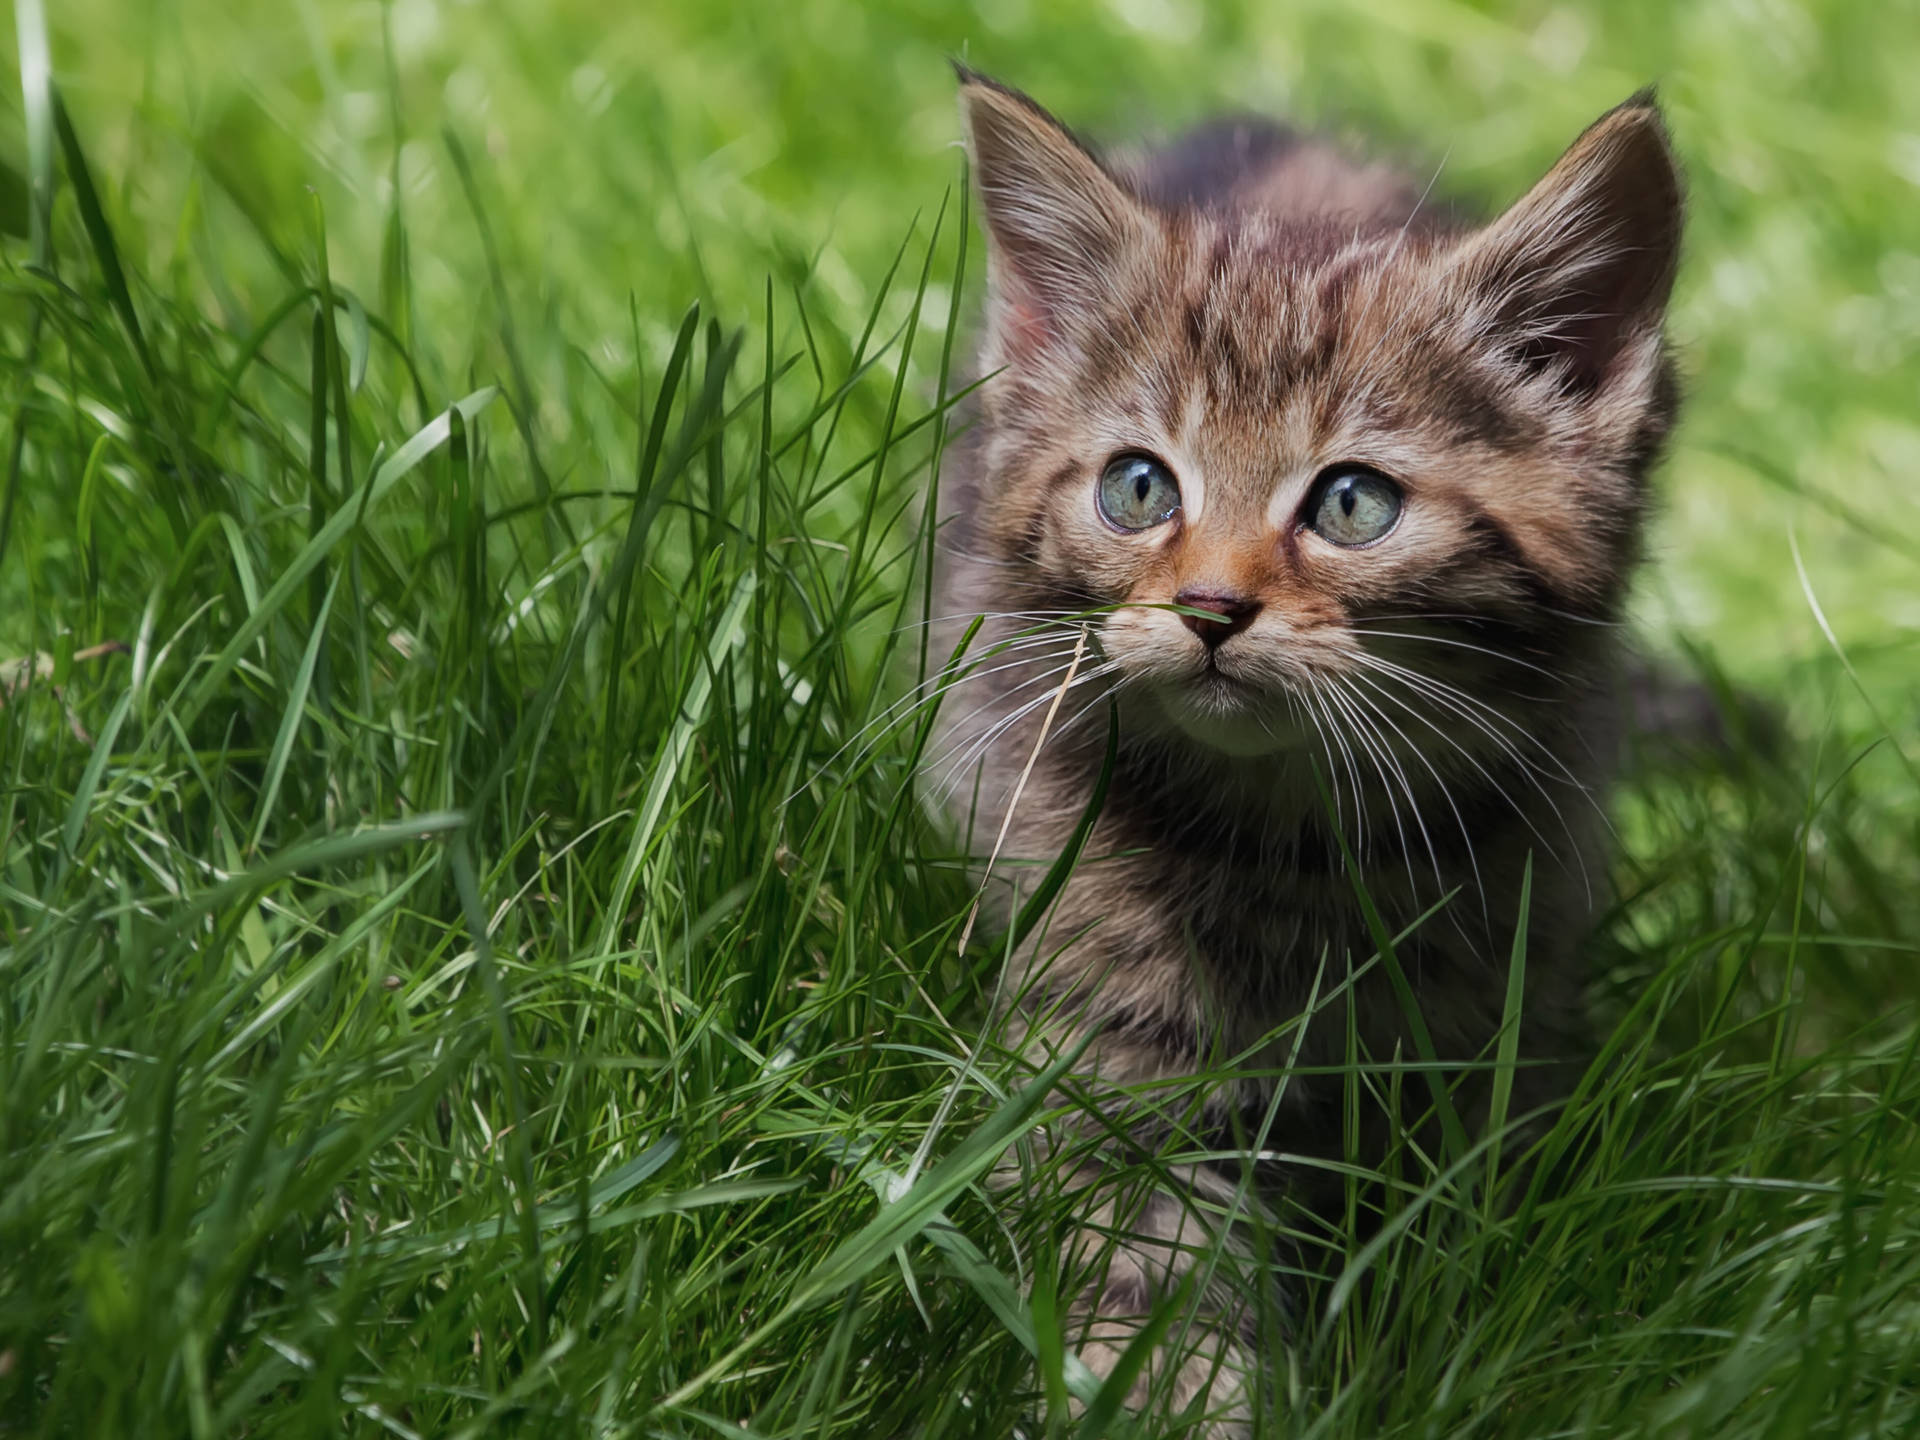 Cute Kitten Walking On Grass Background